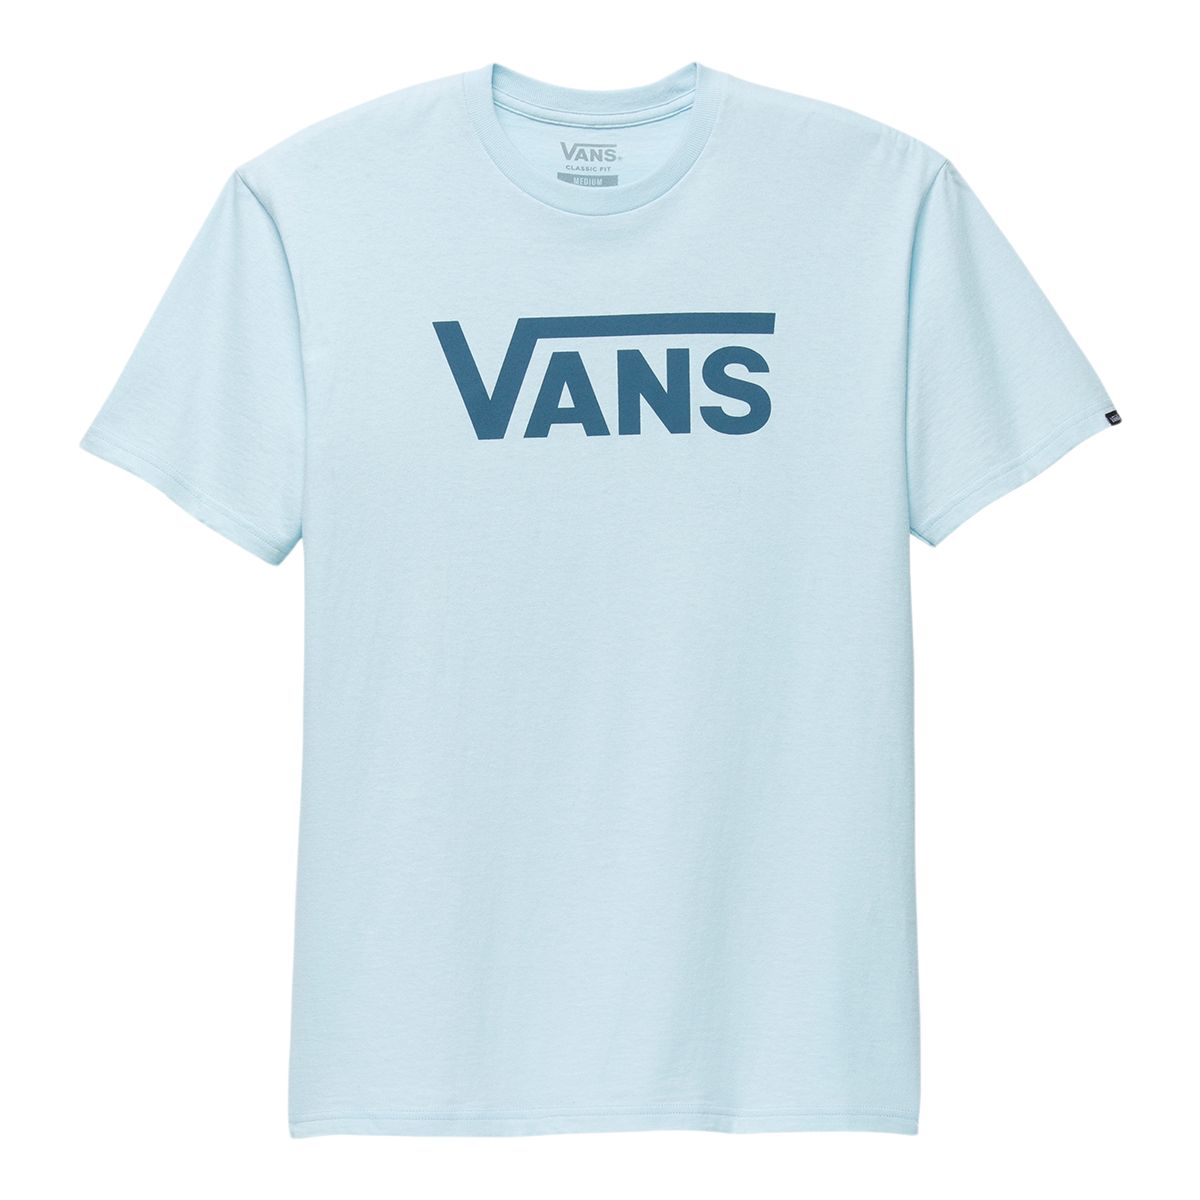 Vans Men's Classic T Shirt